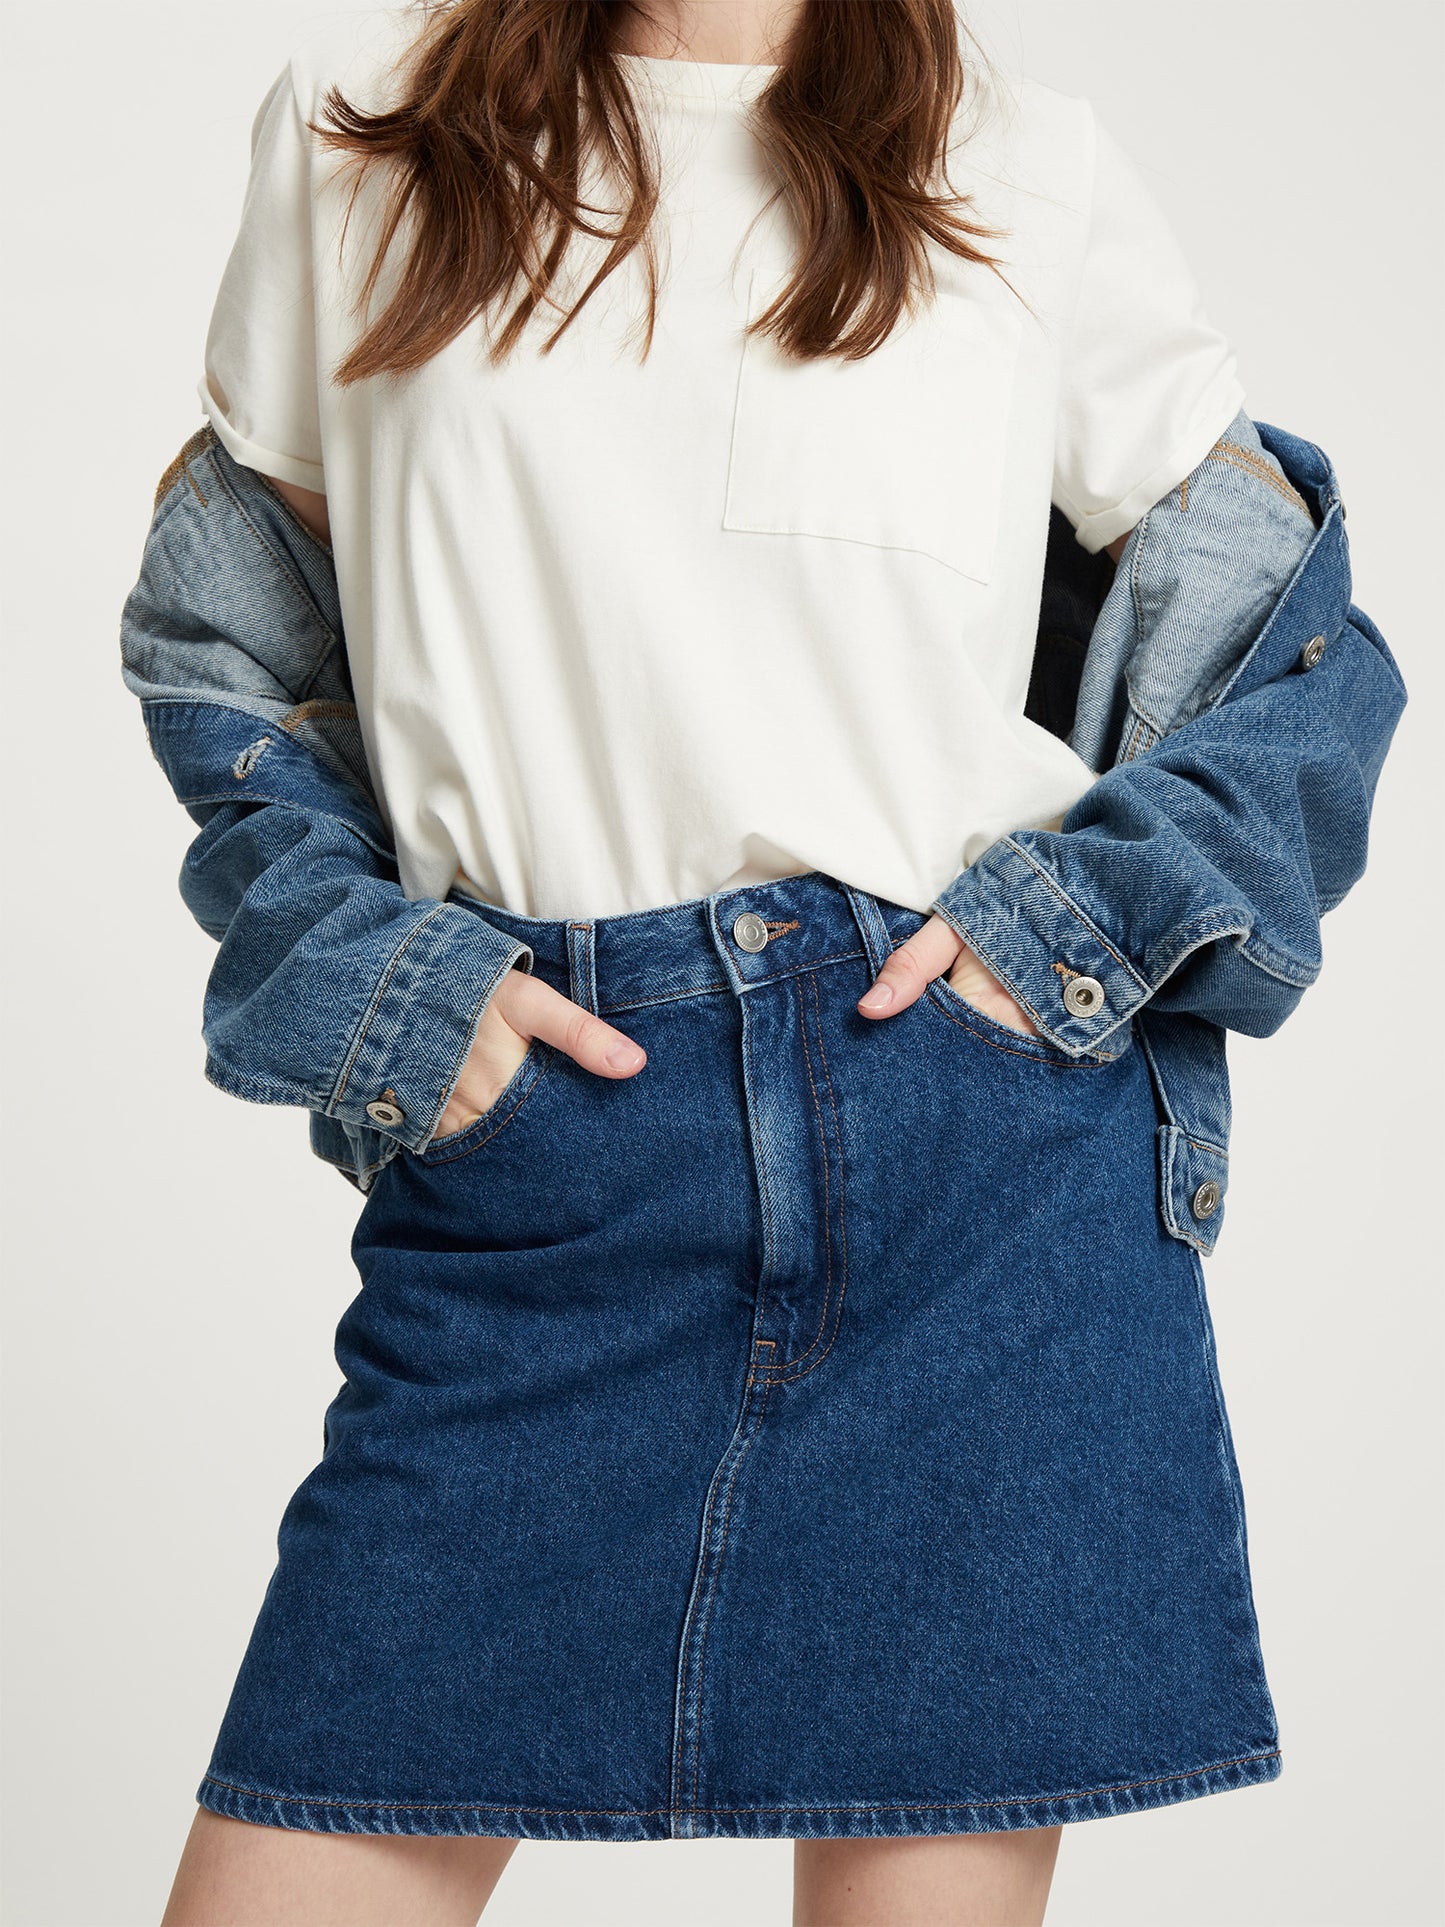 Women's regular mini skirt five-pocket style blue